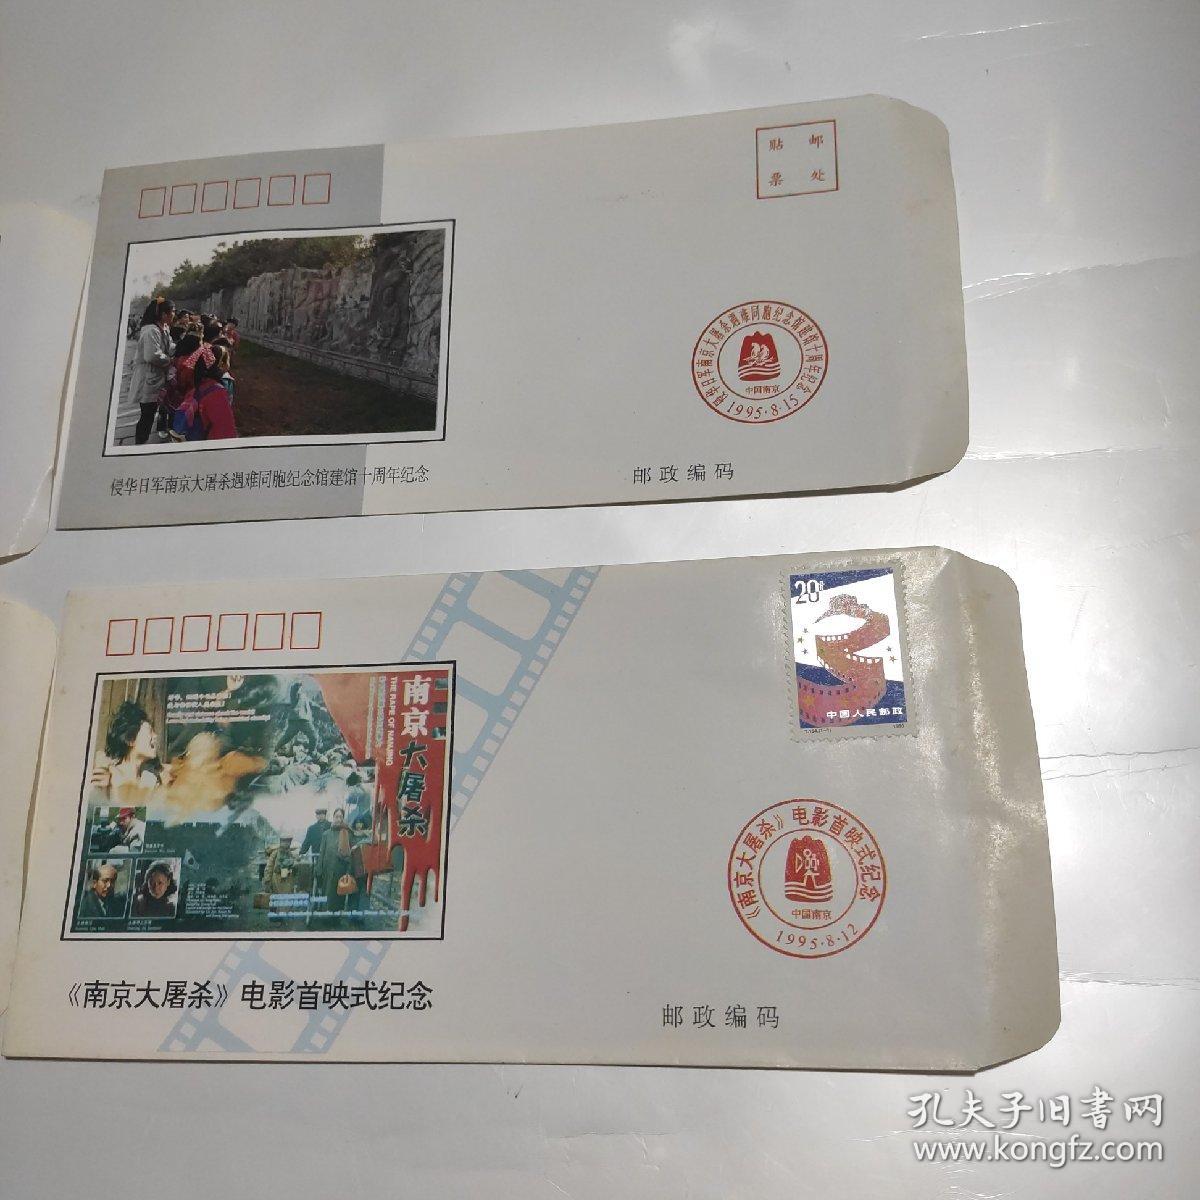 《南京大屠杀》电影首映式纪念封3张+侵华日军南京大屠杀遇难同胞纪念馆建馆十周年纪念封1张 共4张合售 末使用1张邮票